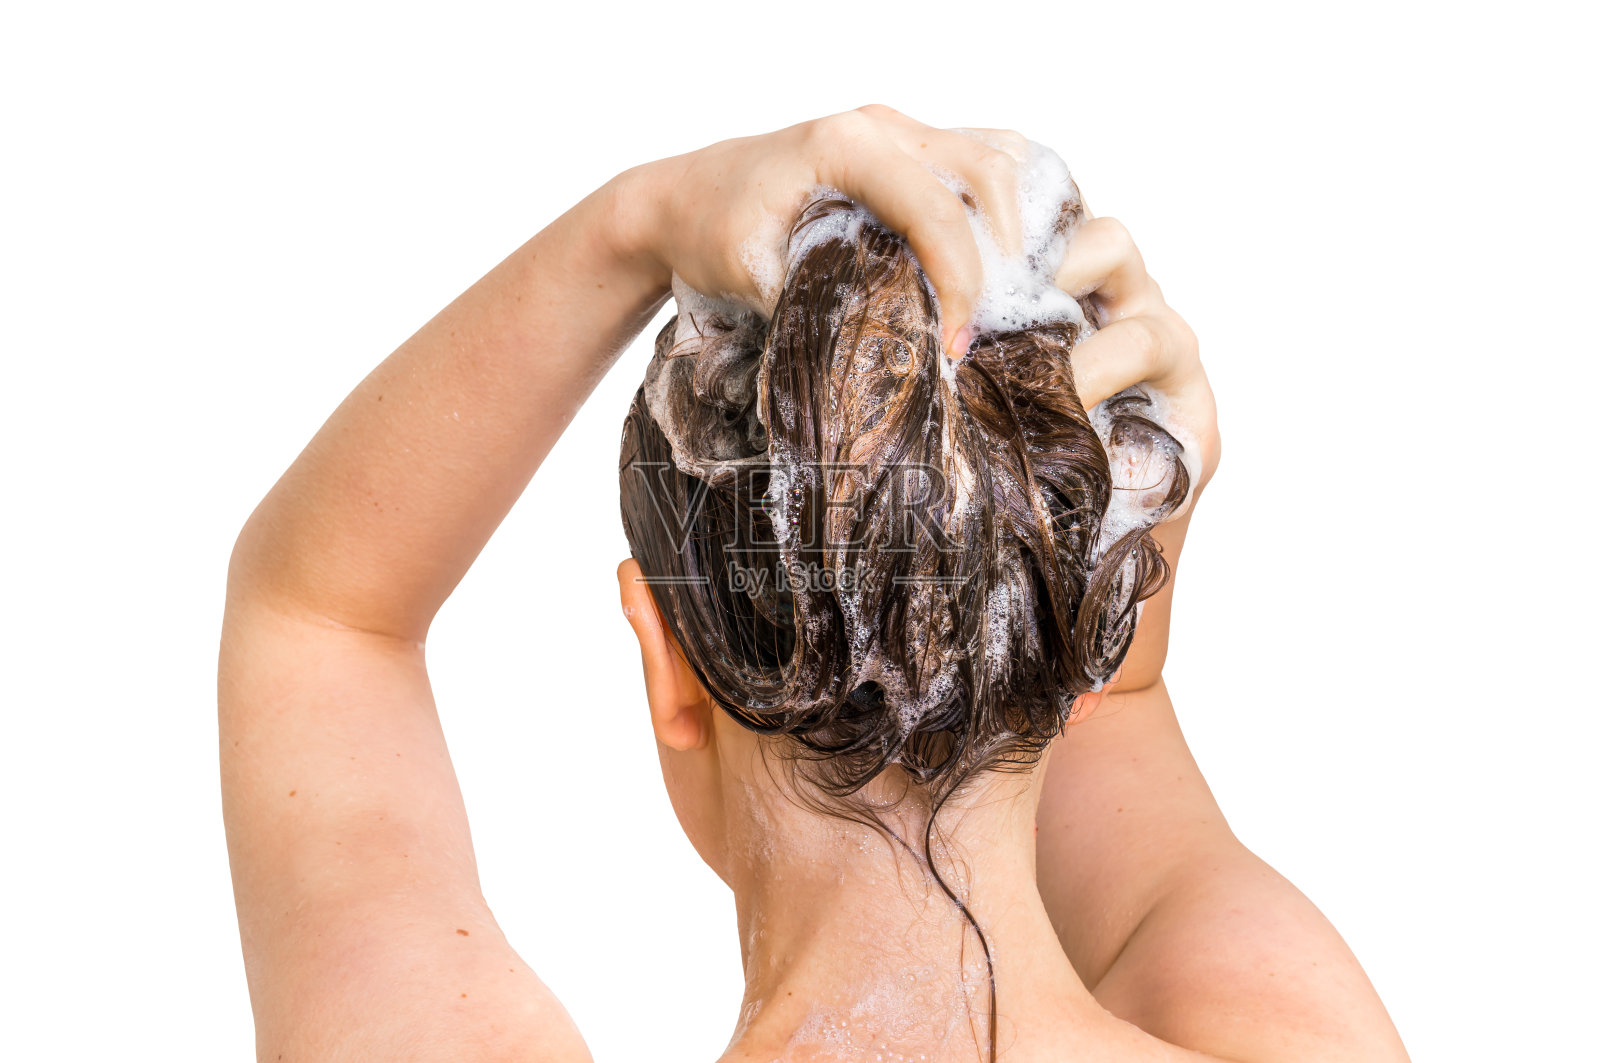 美女在淋浴时用香波洗头照片摄影图片